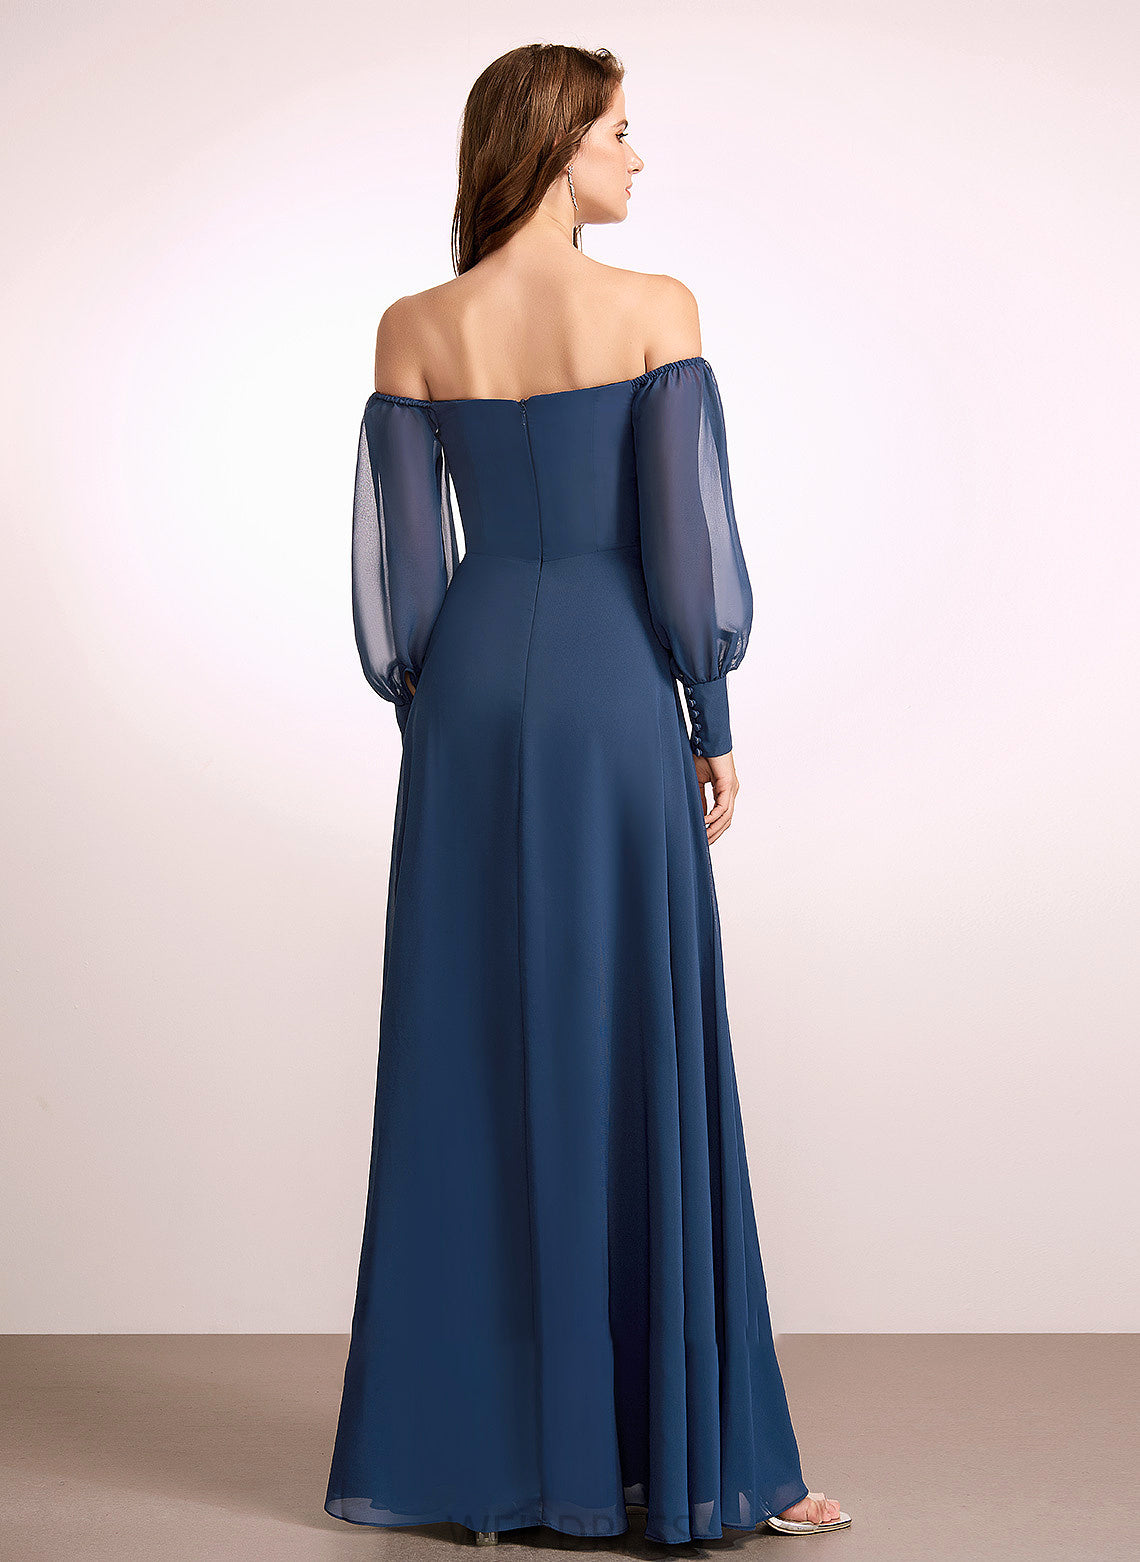 Silhouette Embellishment Neckline Length SplitFront A-Line Fabric Off-the-Shoulder Floor-Length Sabrina V-Neck Natural Waist